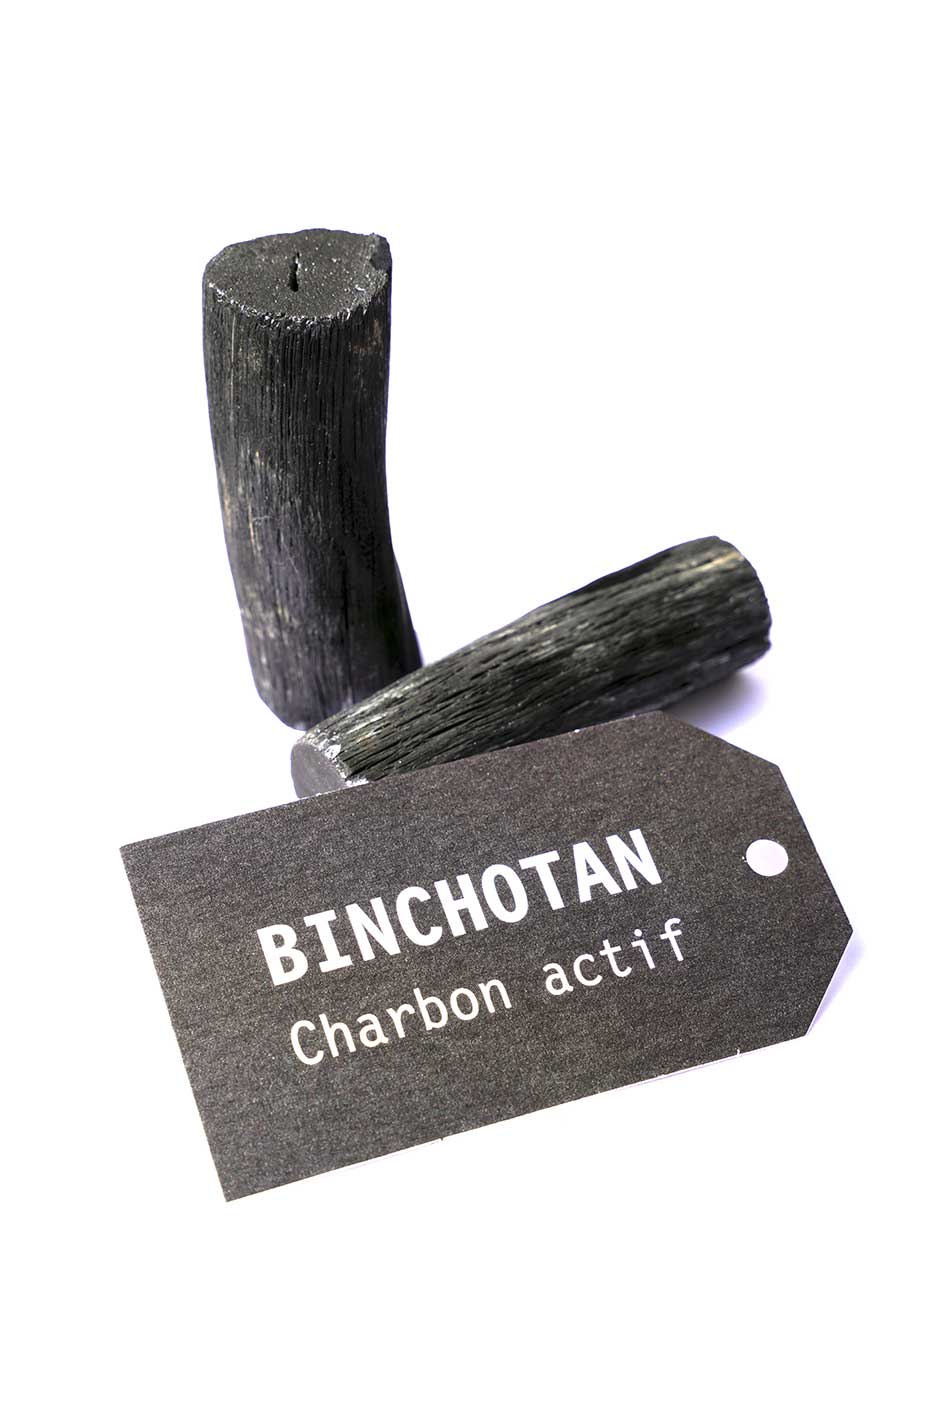 CHARBON ACTIF BINCHOTAN JAPONAIS - Taille M